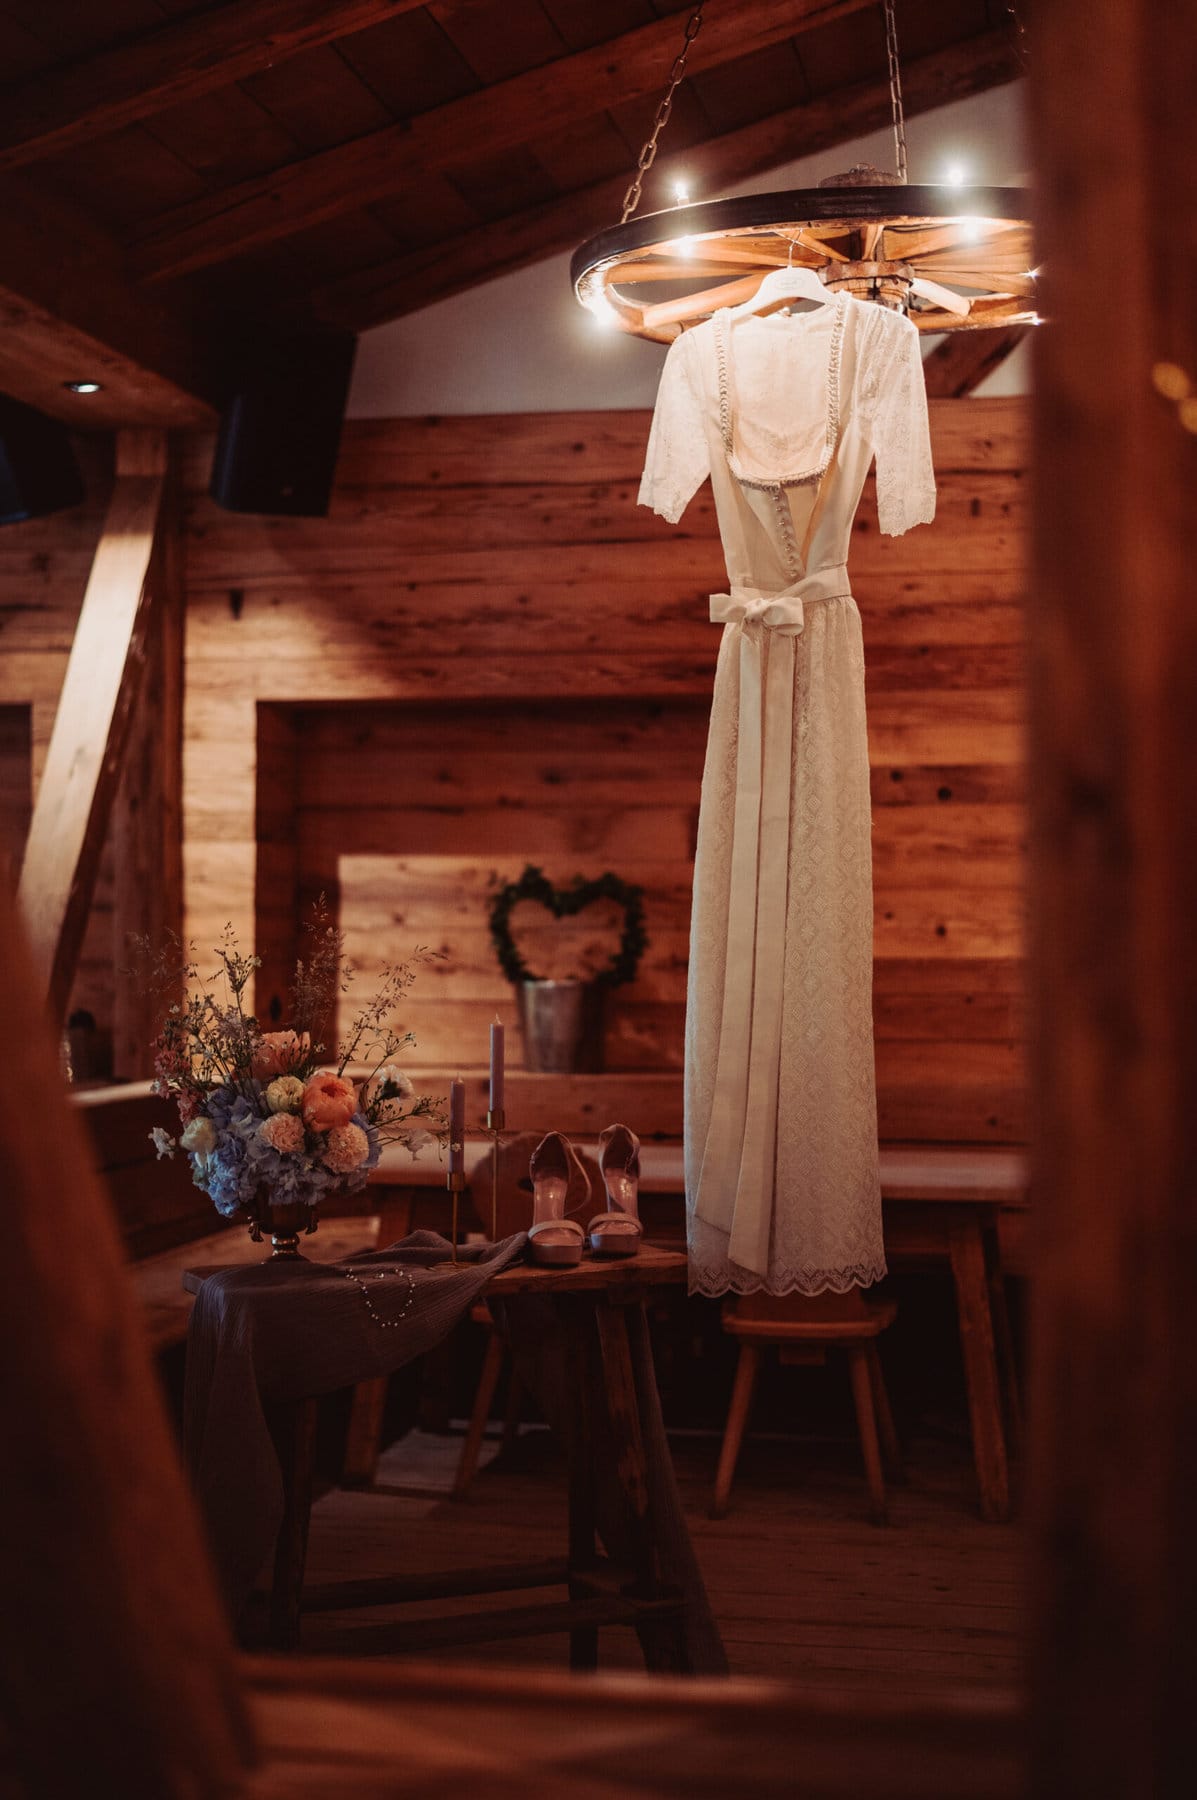 Das Getting Ready der Braut auf der Meckatzer Sportalp. In einem Raum aus Holz hängt das Brautkleid der Braut und auf einem kleinen Tisch stehen die Schuhe der Braut.